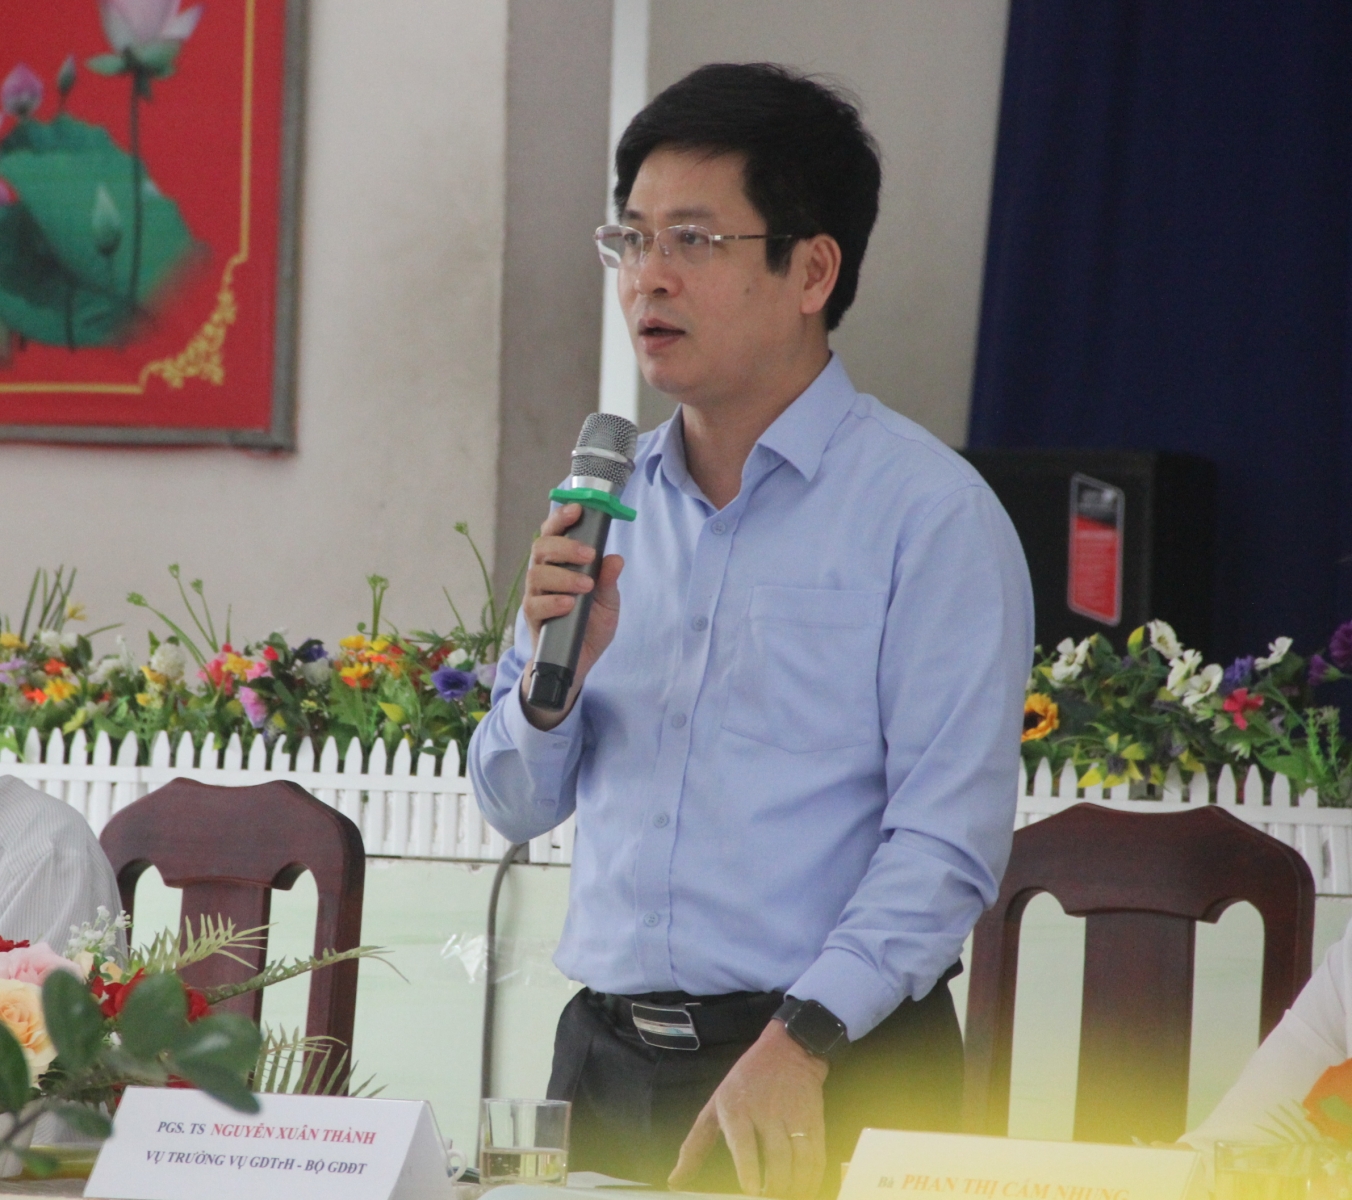 Thứ trưởng Nguyễn Hữu Độ khảo sát thực hiện chương trình GDPT 2018 tại TPHCM - Ảnh minh hoạ 5